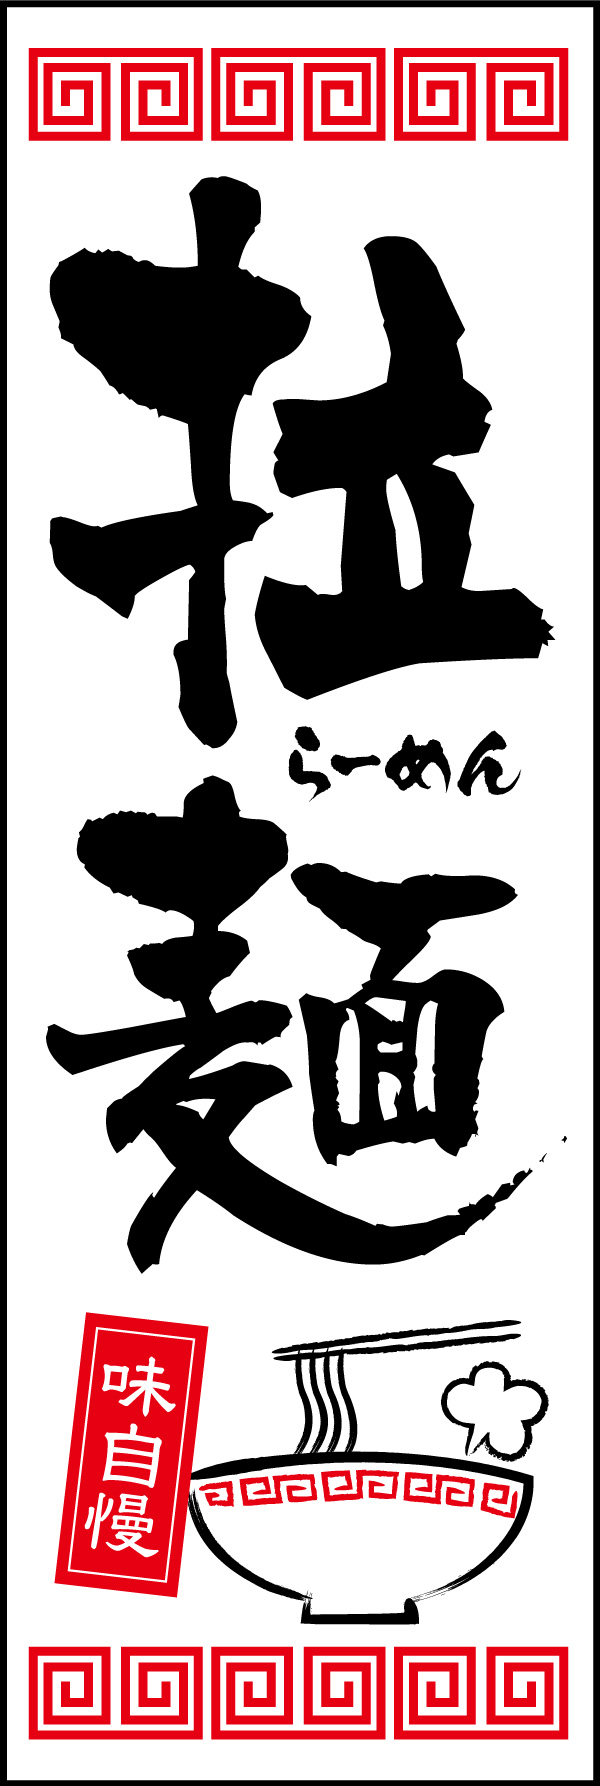 拉麺 07「拉麺」ののぼりです。漢字で「拉麺」表現、本格さをアピール。イラストにも注目して下さい！(Y.M) 